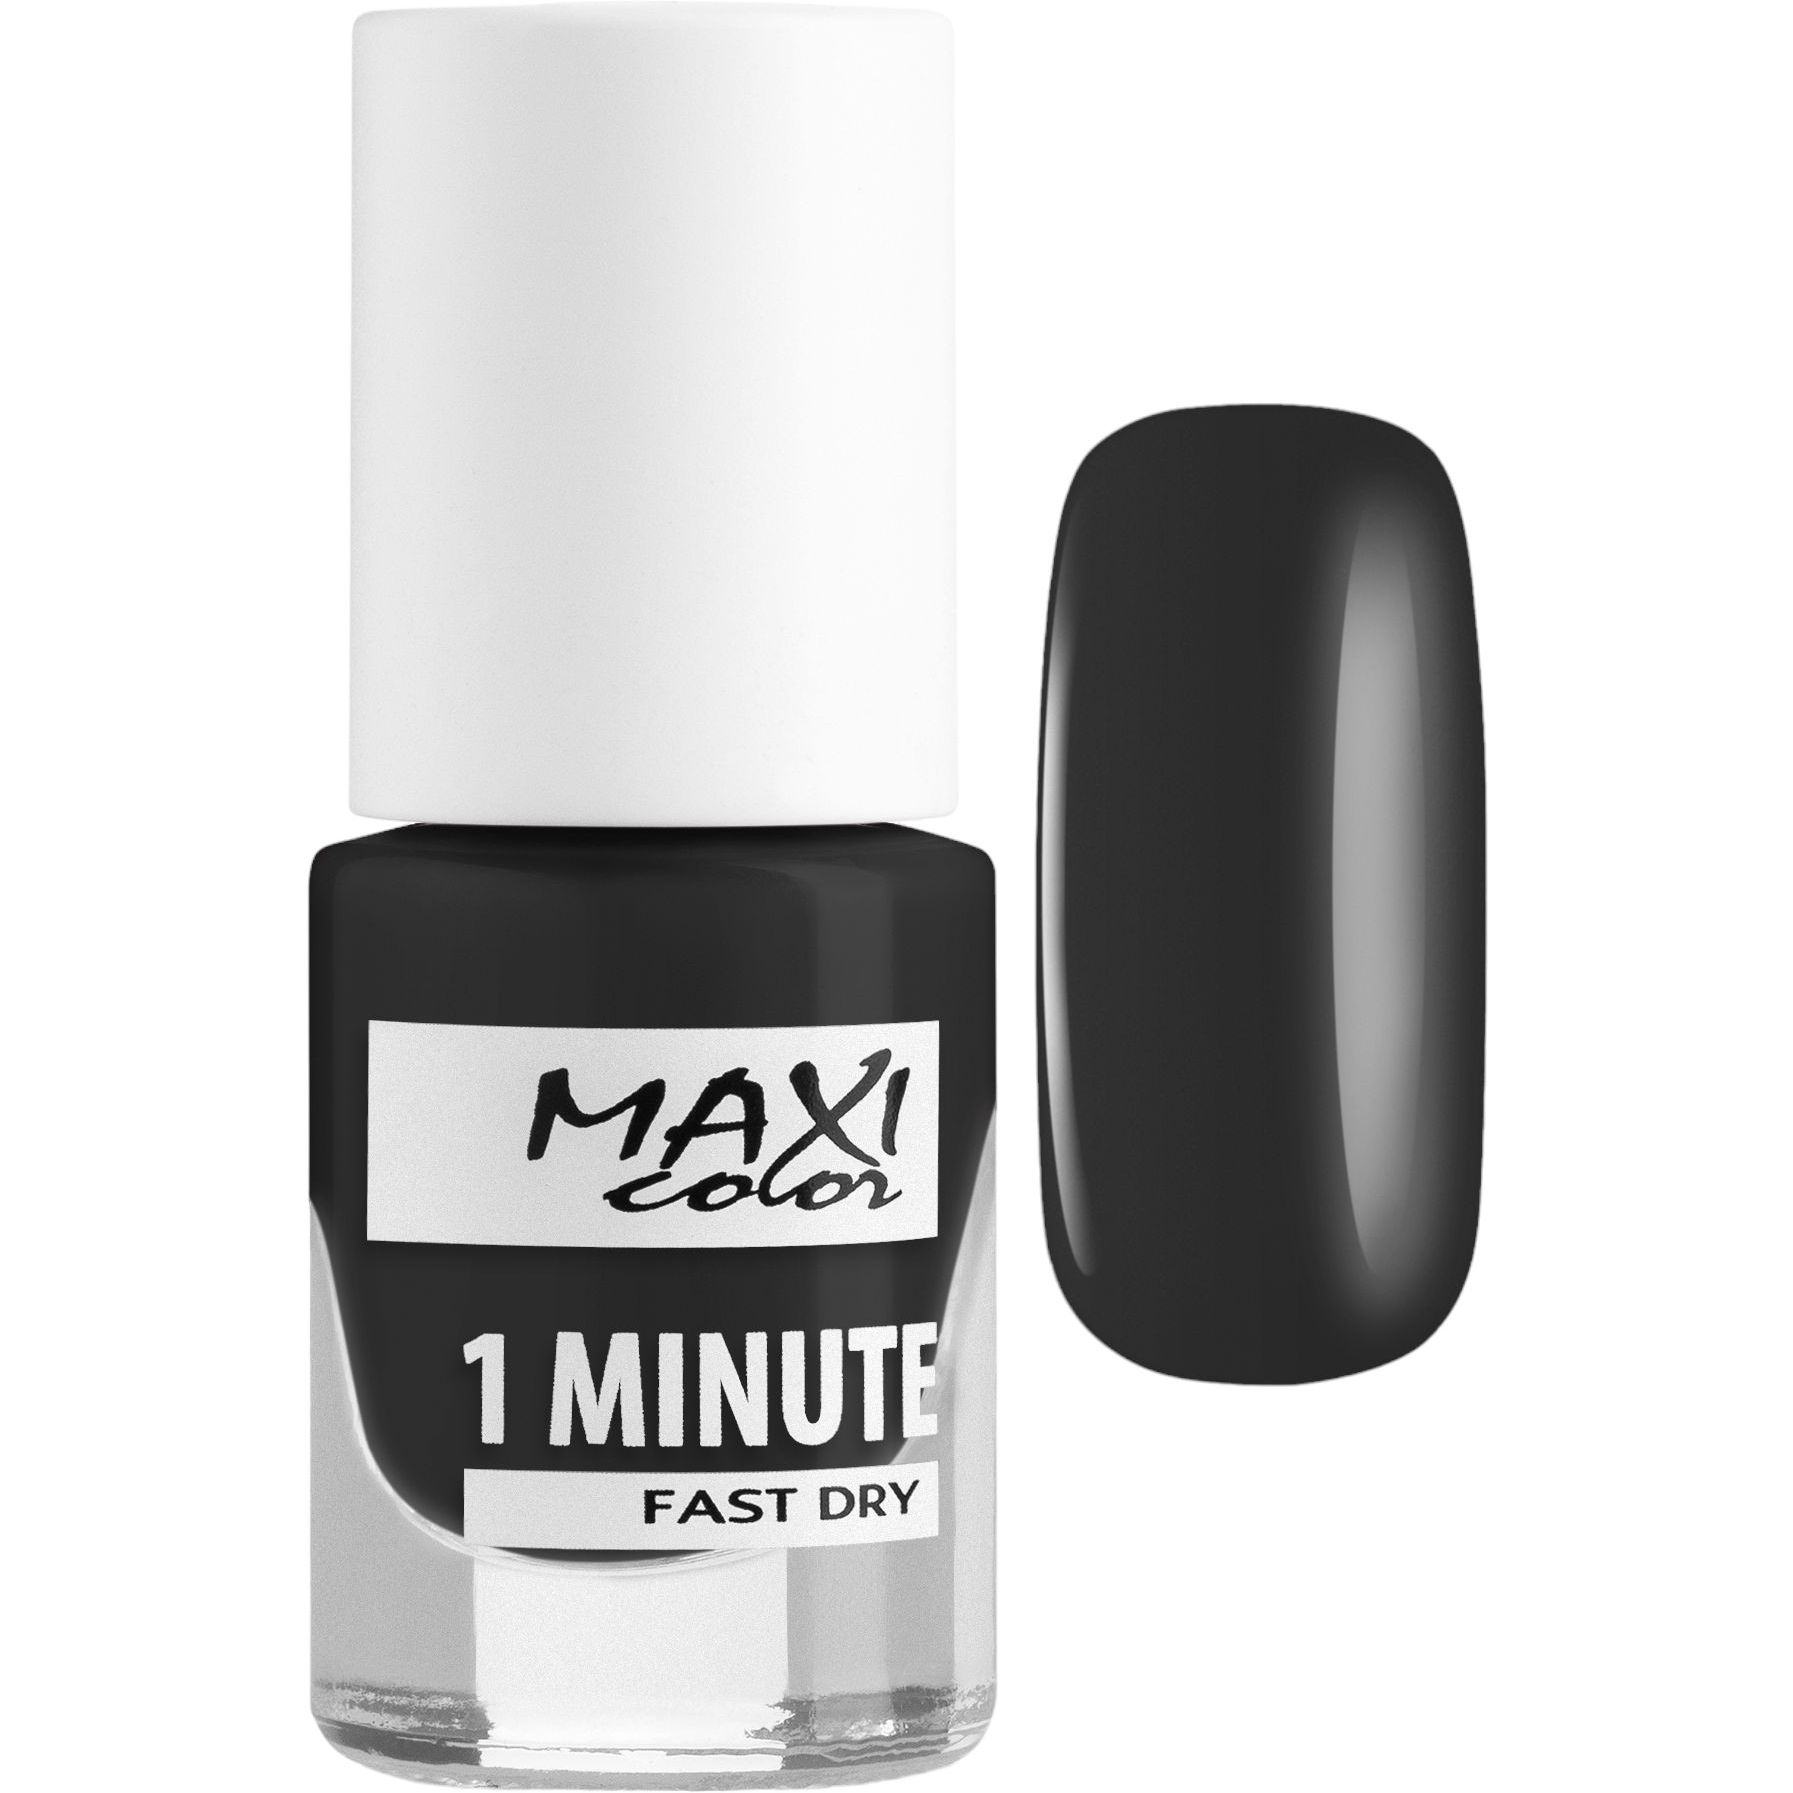 Лак для ногтей Maxi Color 1 Minute Fast Dry тон 004, 6 мл - фото 1